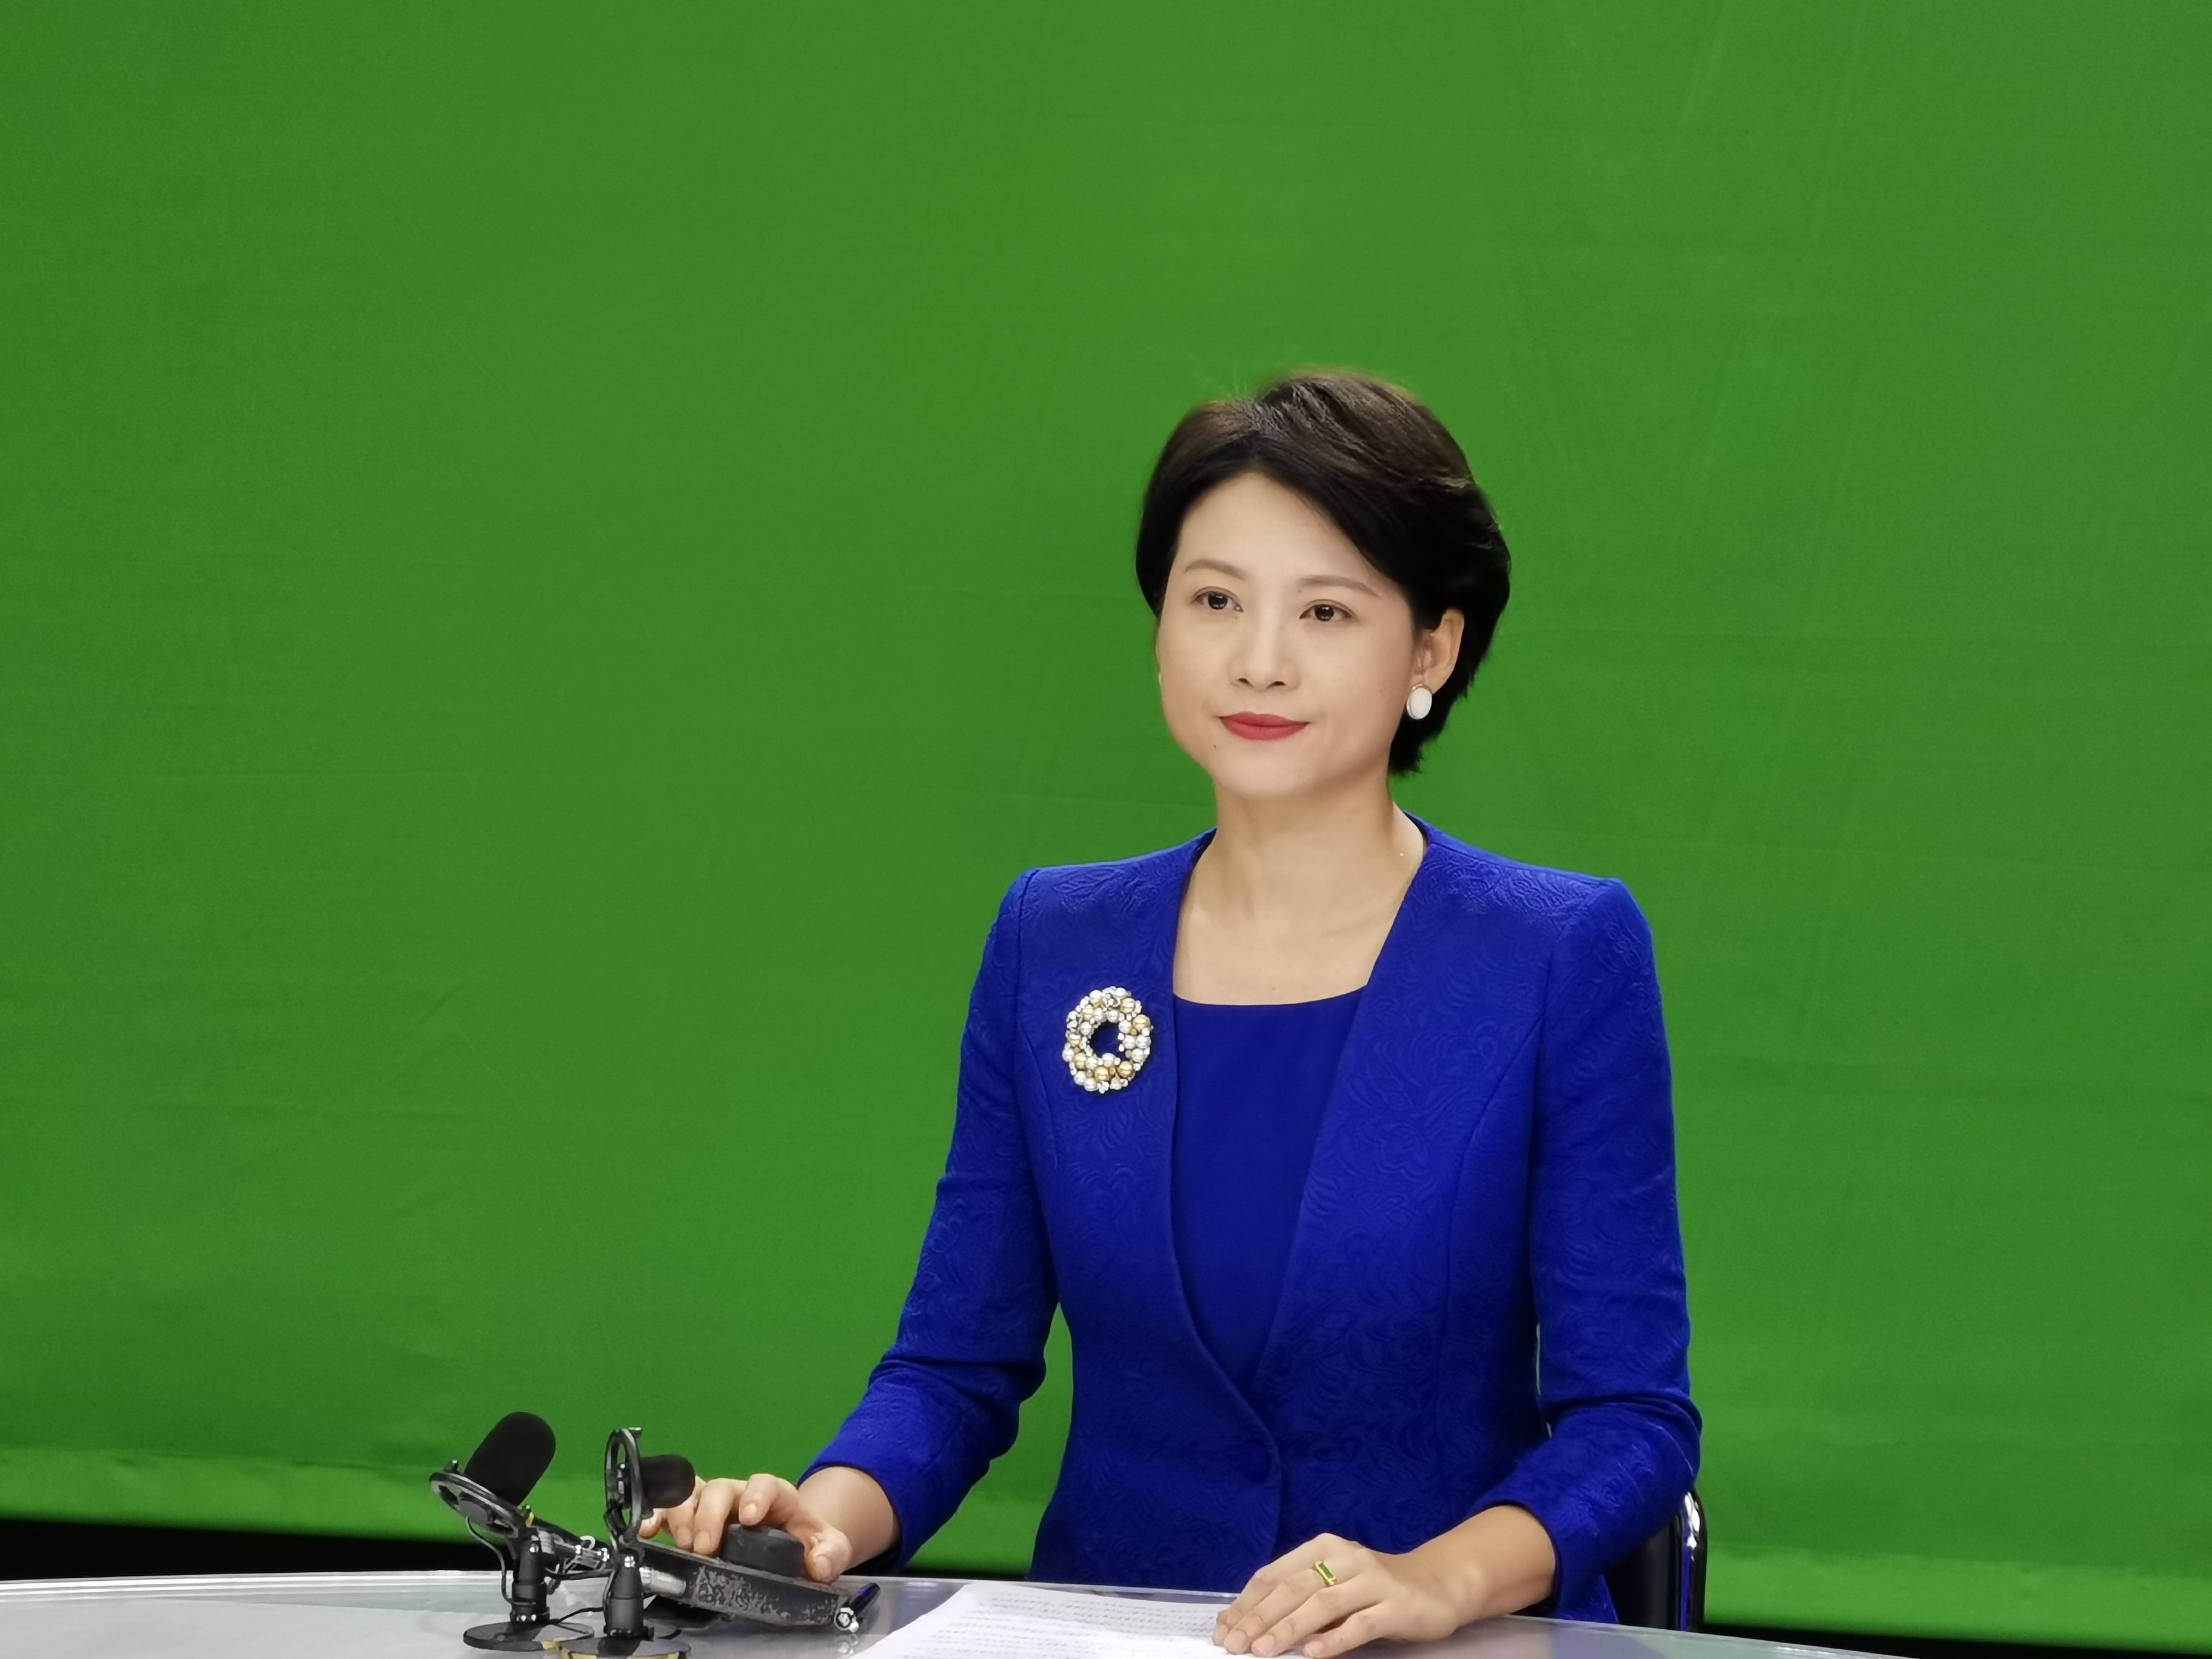 湖南广播电视台主持人王欢:快嘴主播珍惜镜头前的每一刻